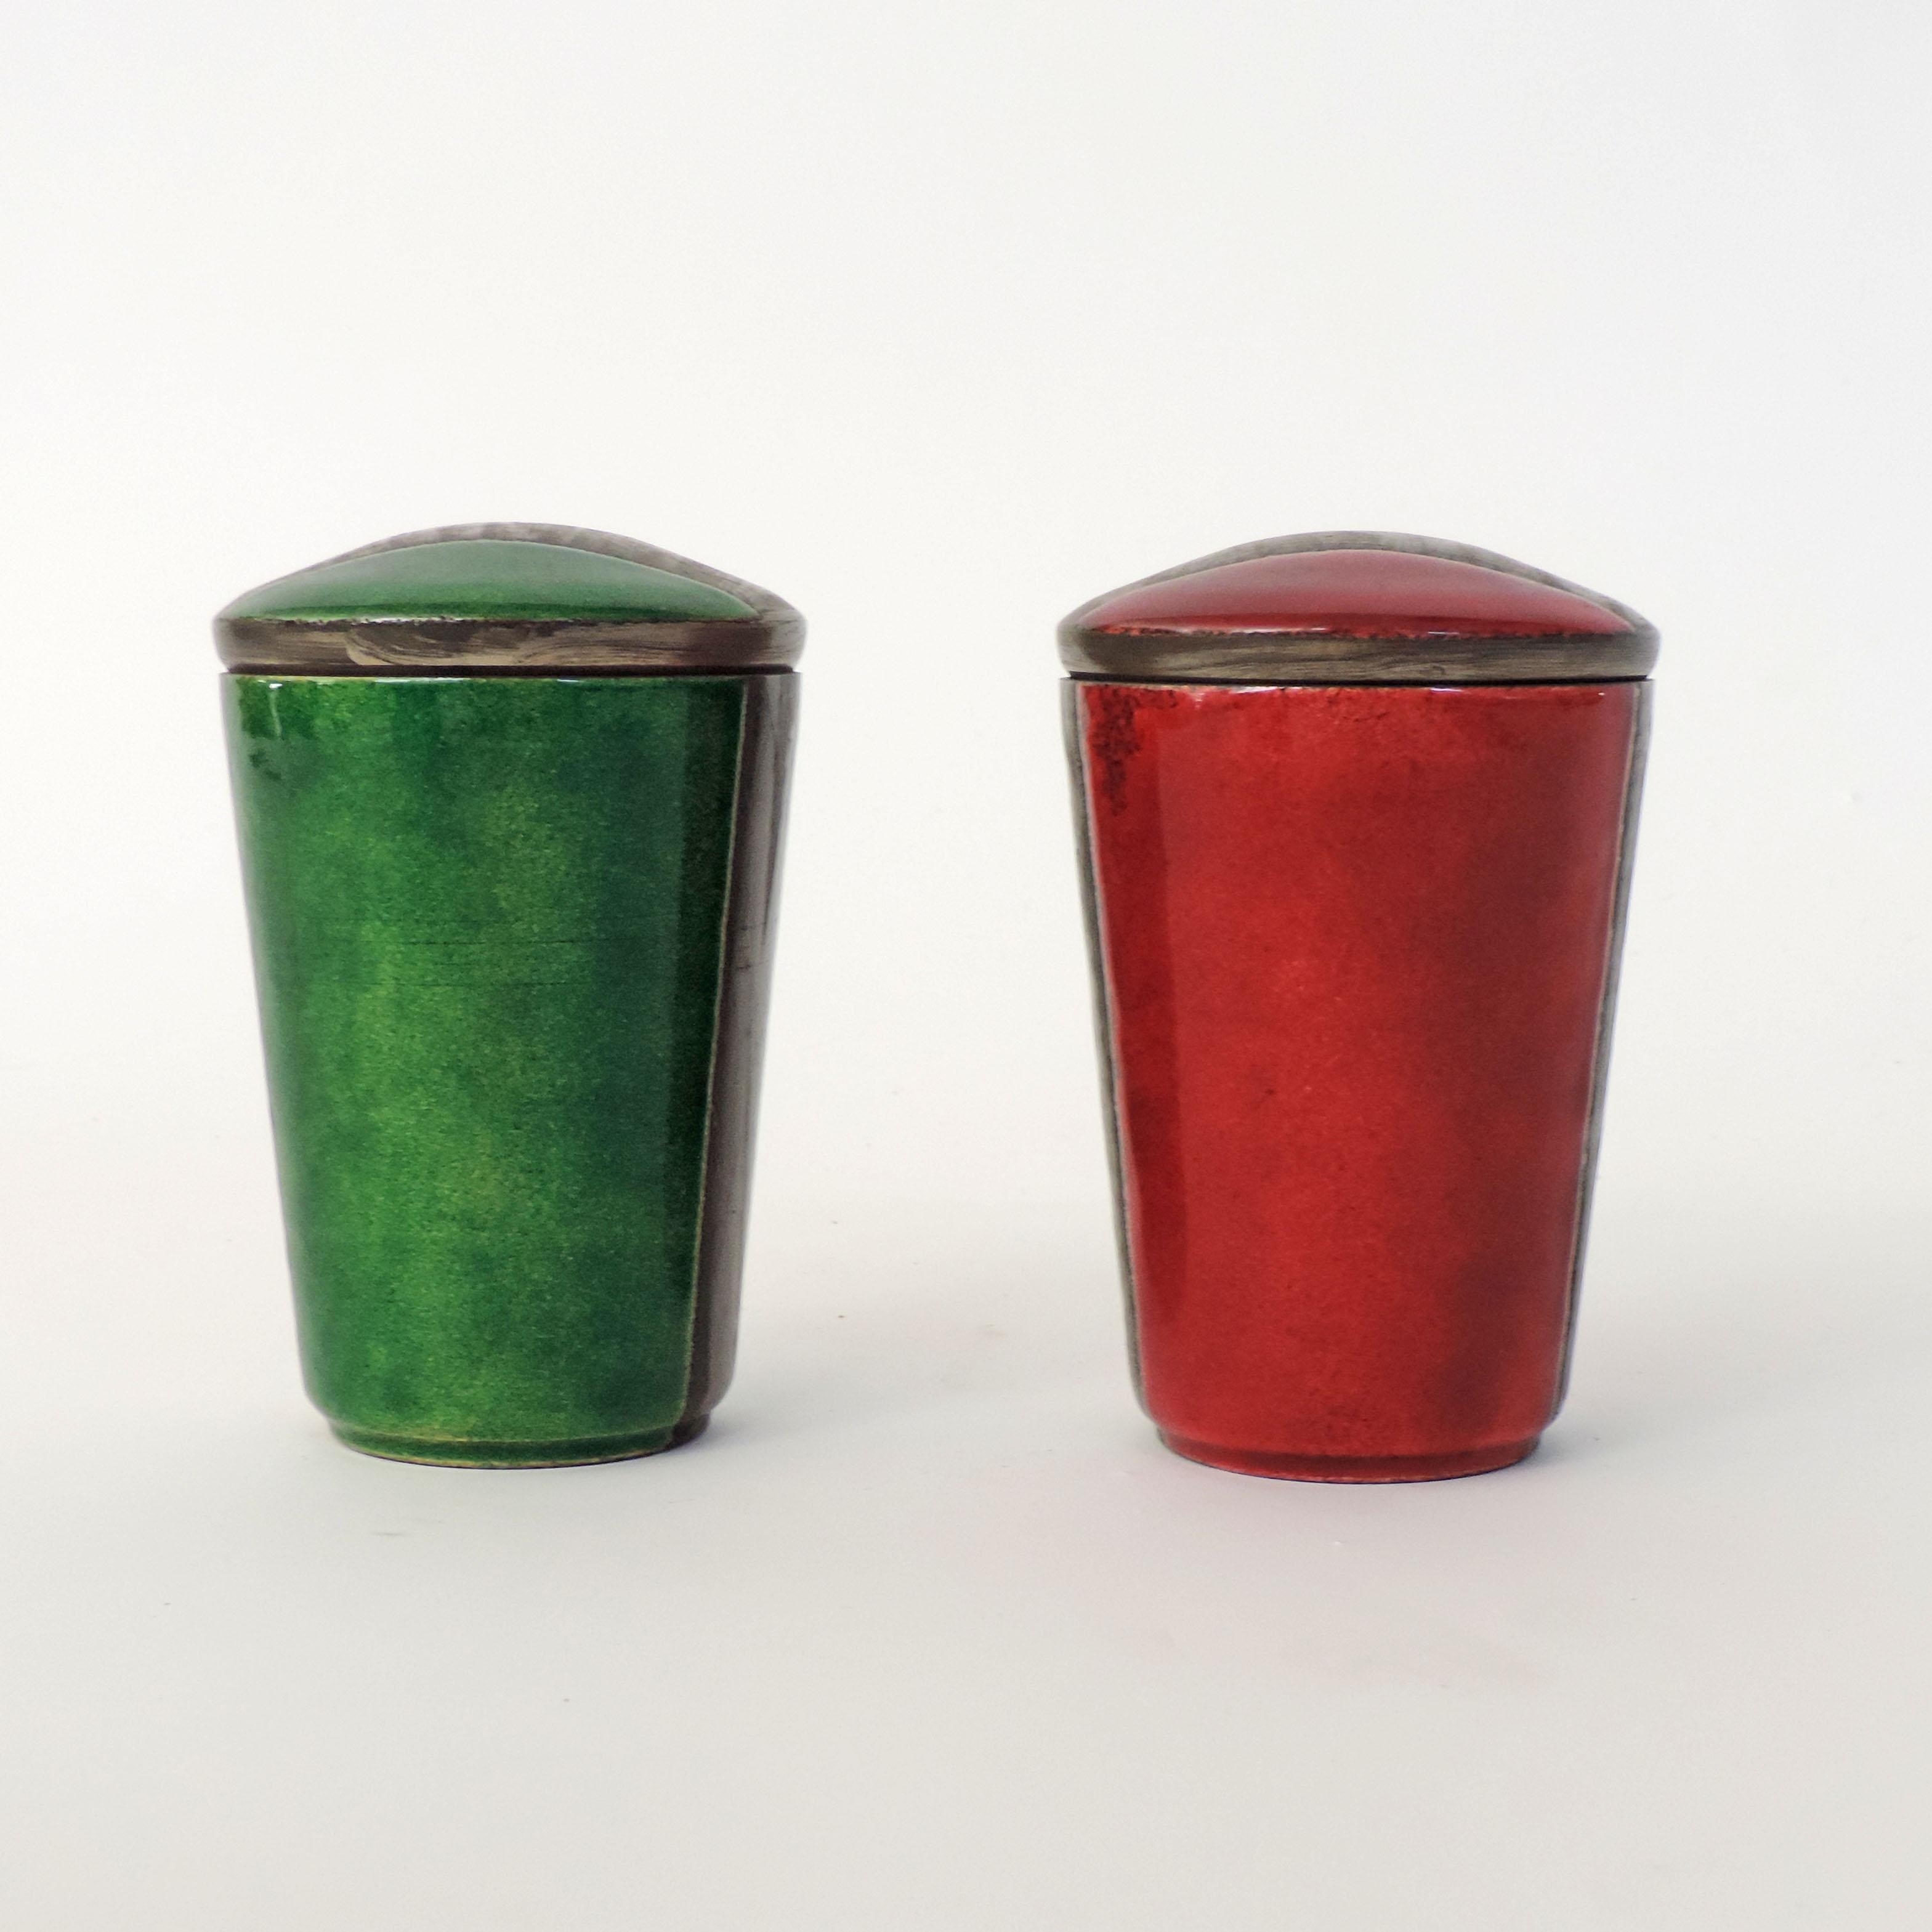 Pair of Italian enamel on metal boxes.